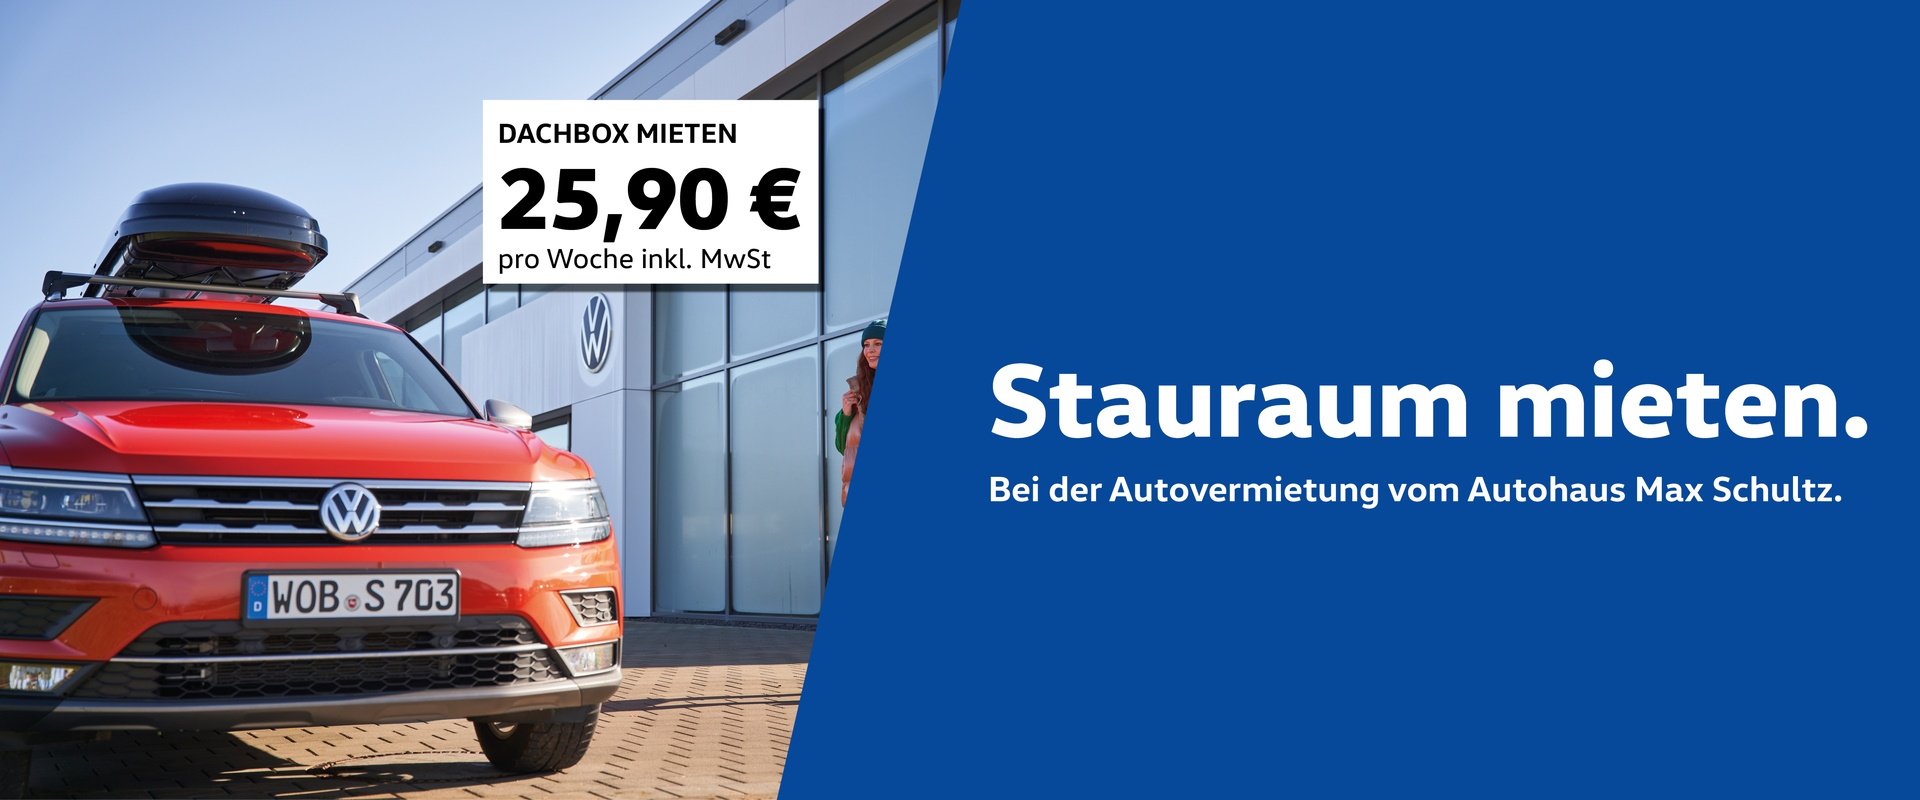 Autohaus Max Schultz GmbH & Co. KG